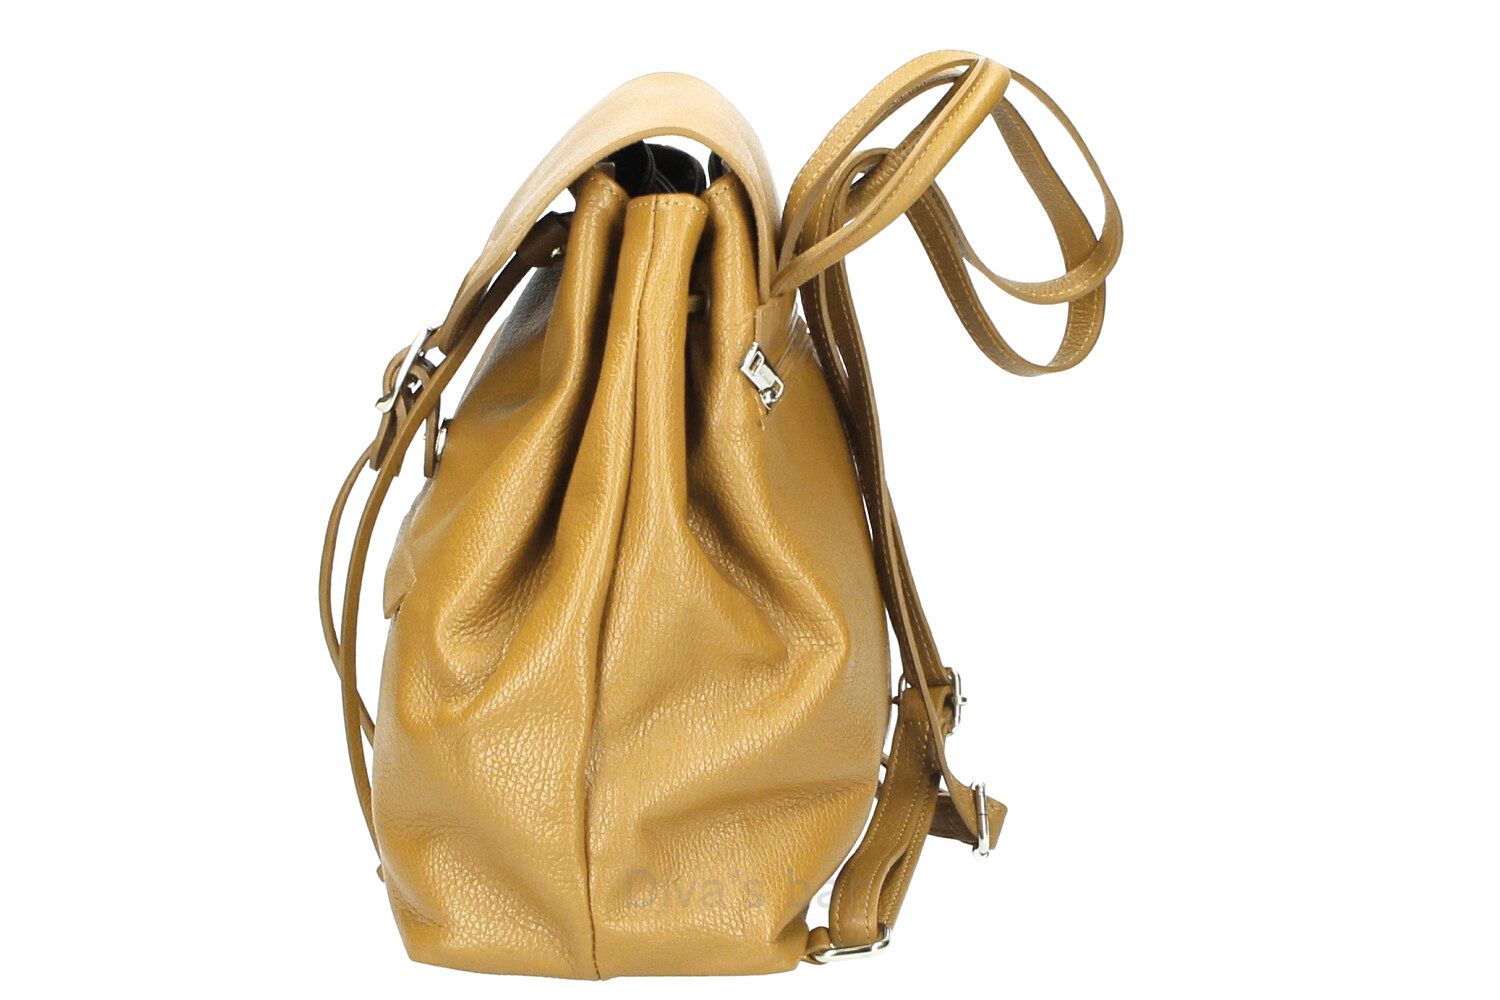 Zlata - Genuine Leather Backpack